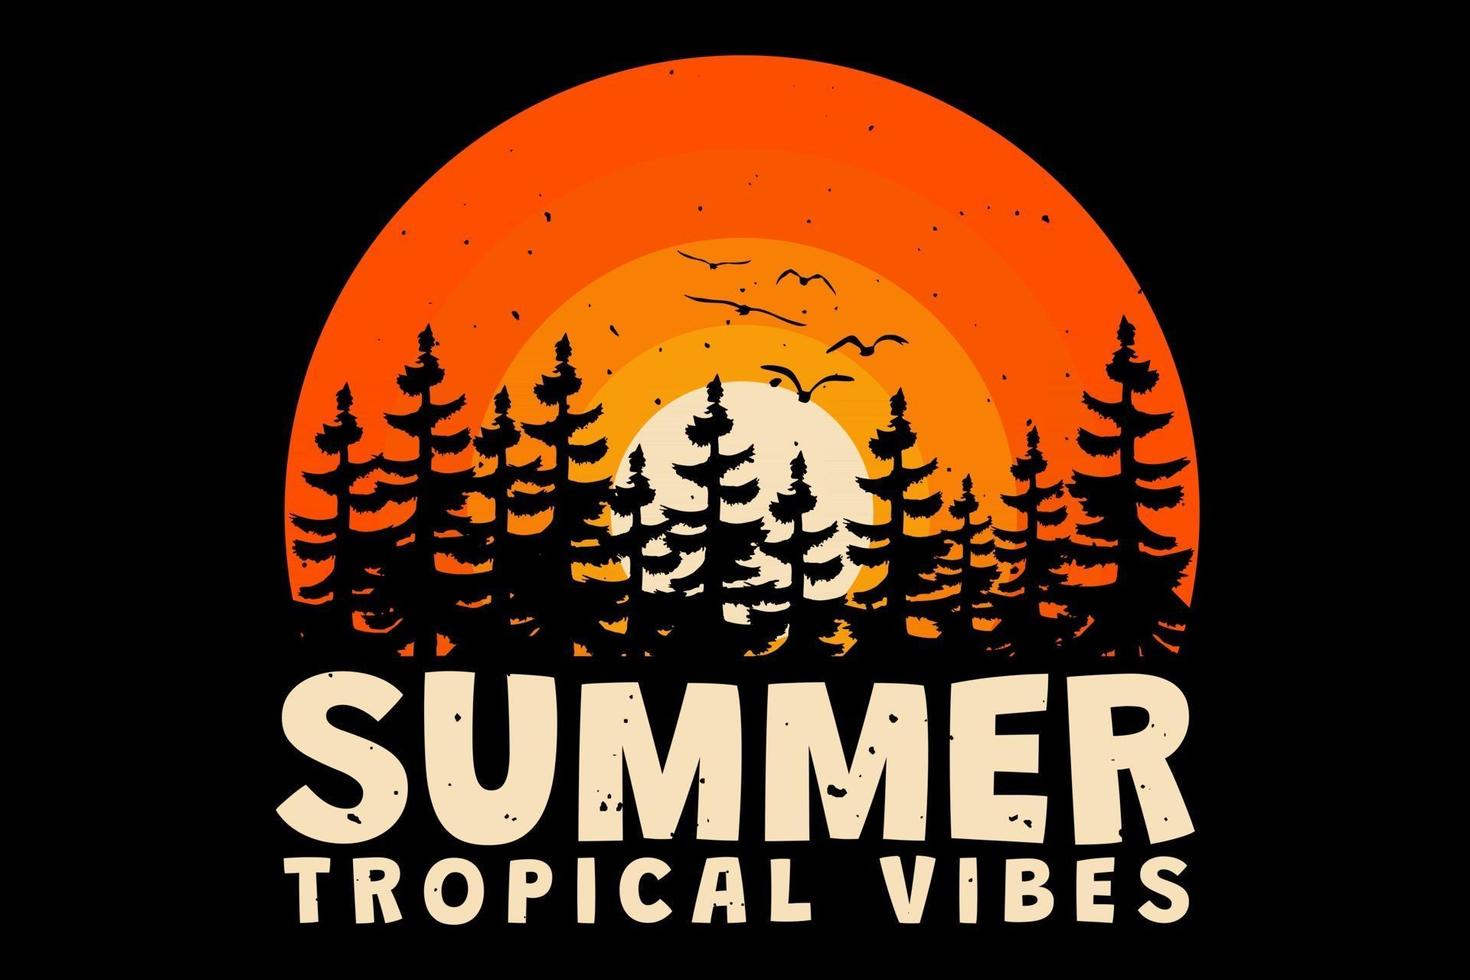 t-shirt estate vibrazioni tropicali tramonto sole stile vintage retrò vettore